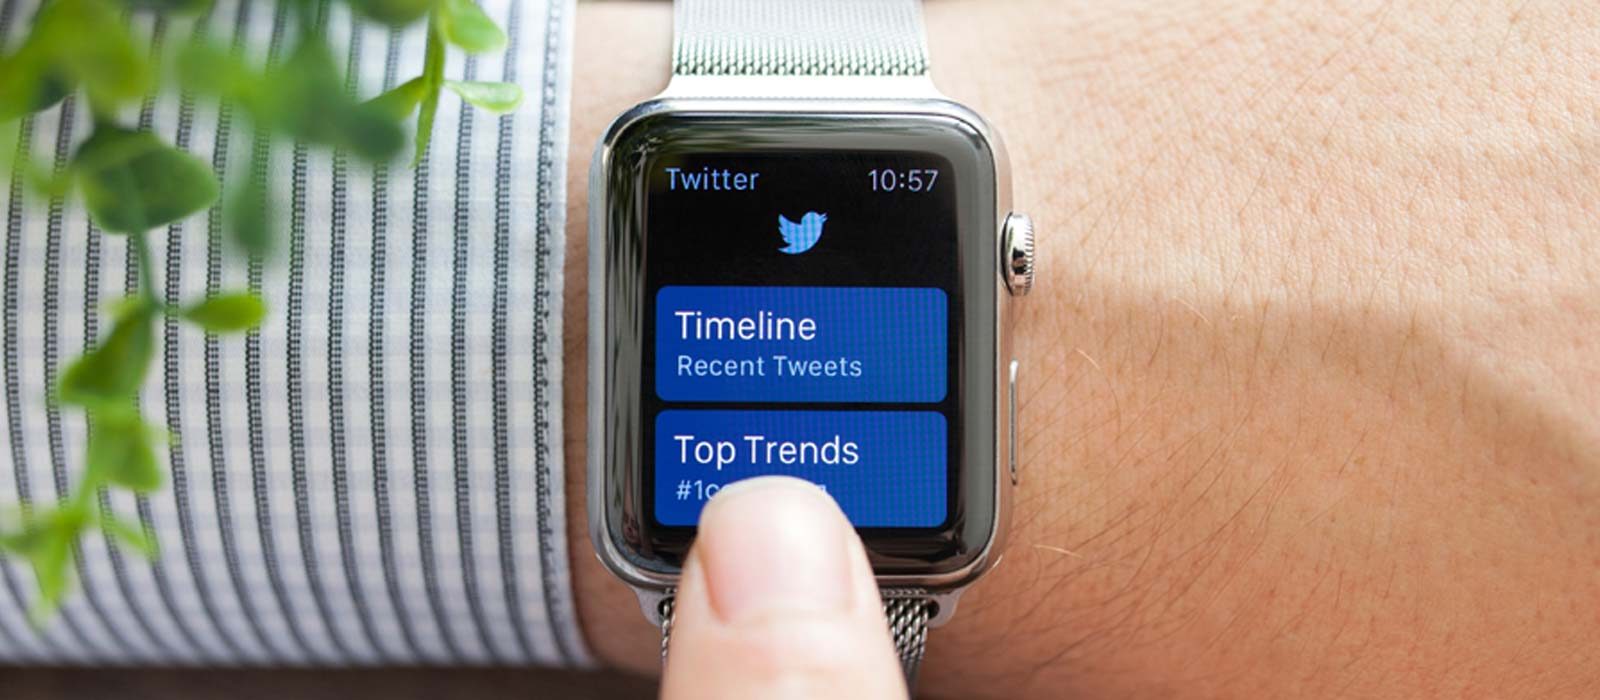 Twitter News Smart Watch